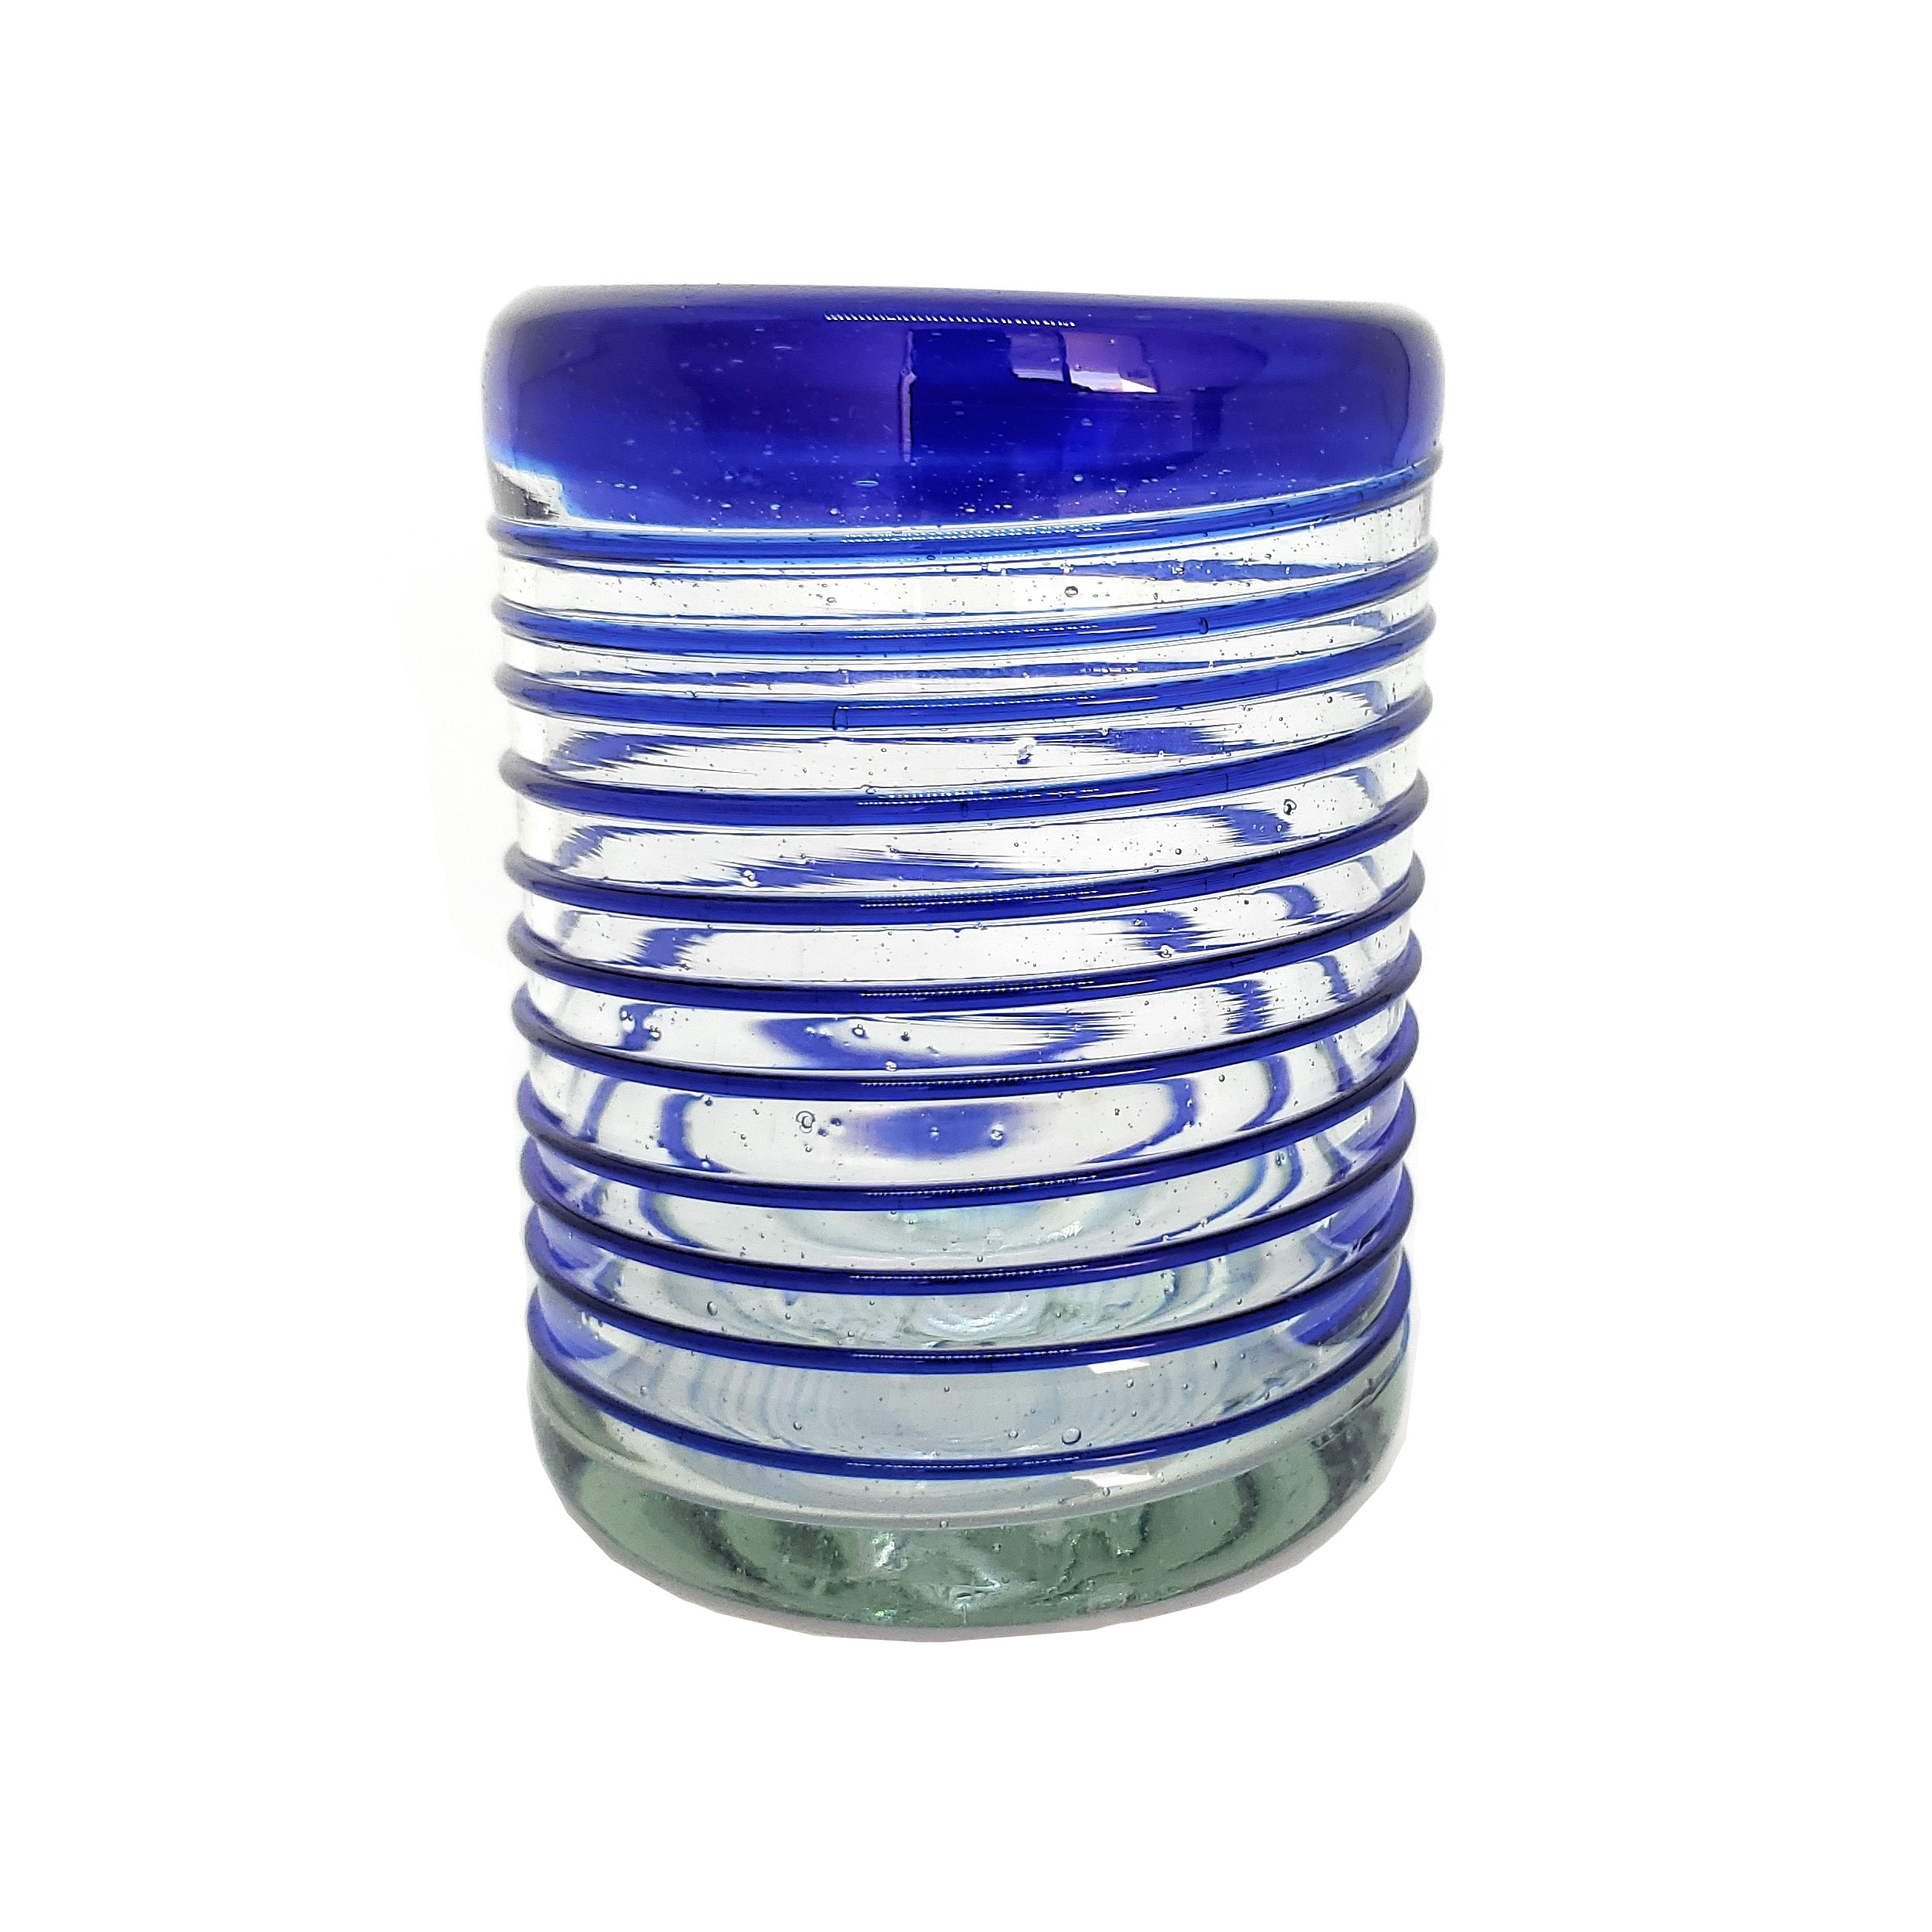 vasos chicos con espiral azul cobalto